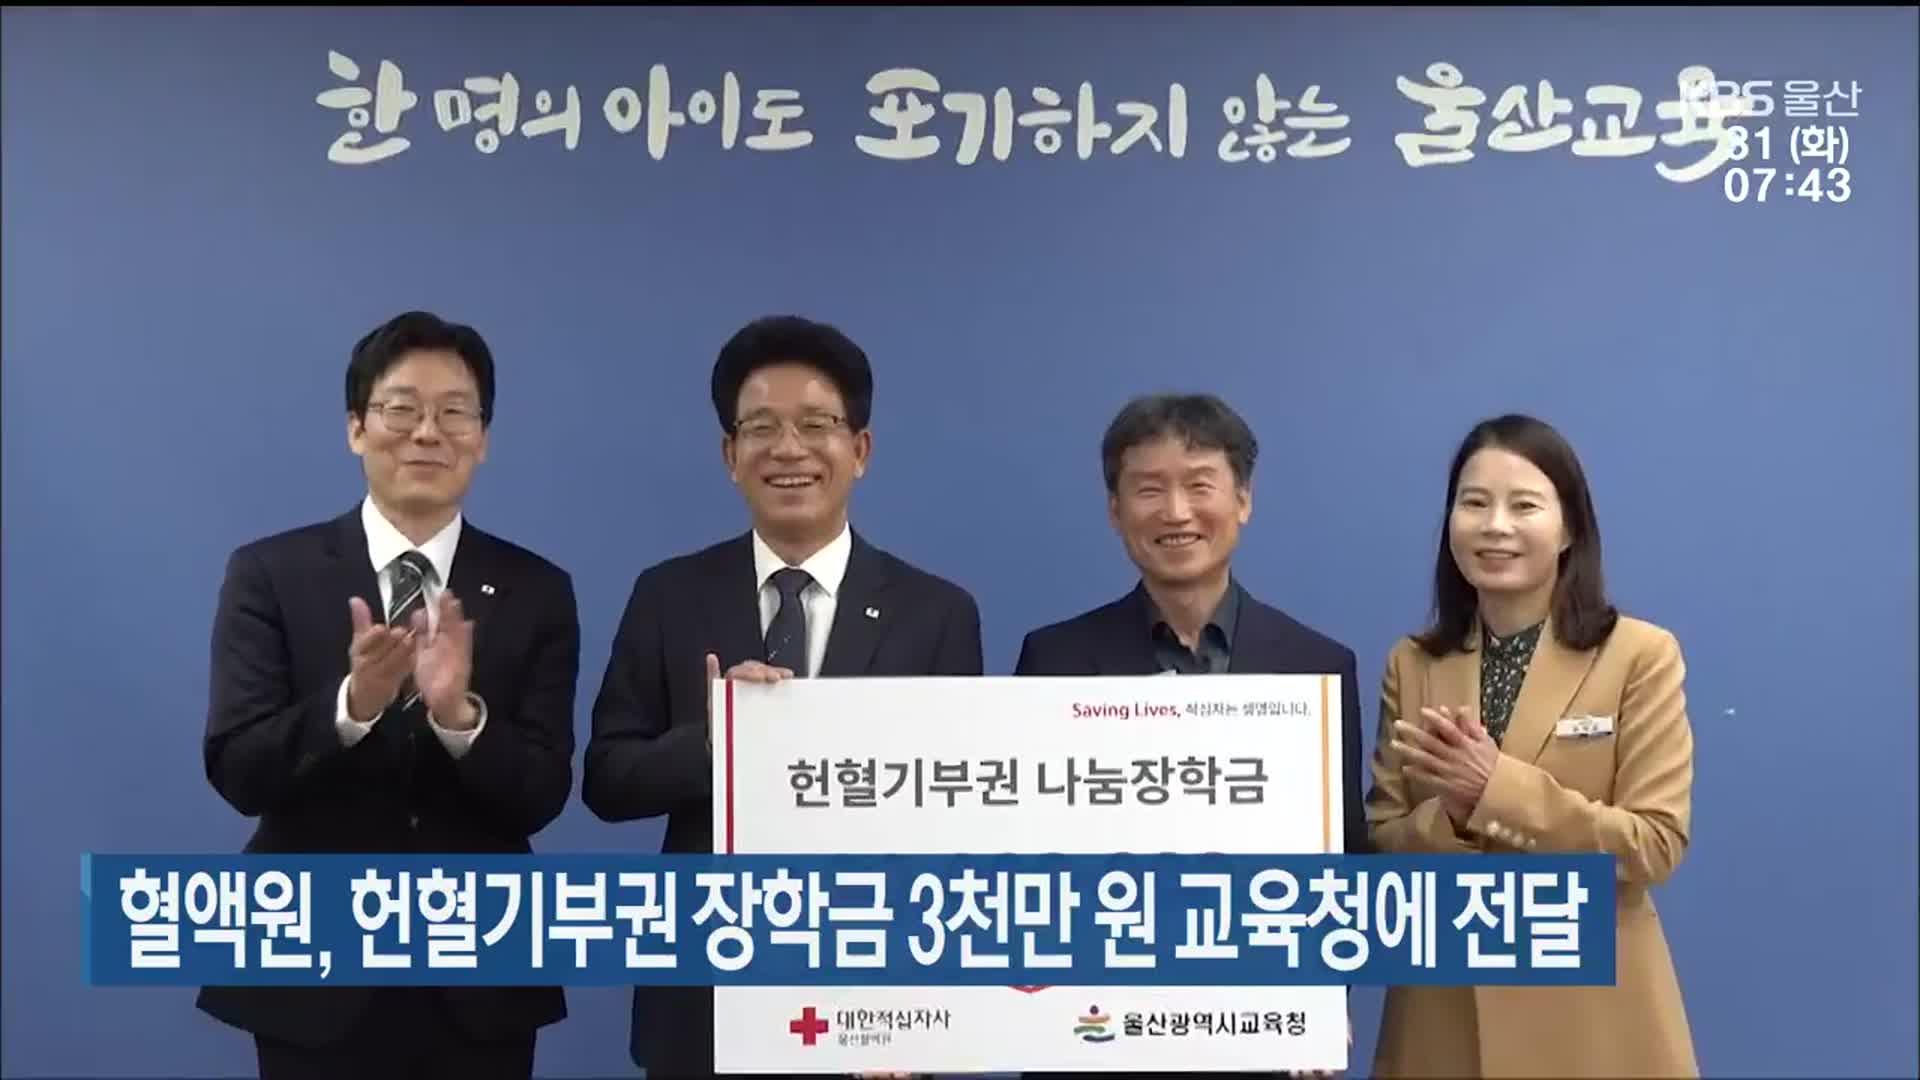 혈액원, 헌혈기부권 장학금 3천만 원 울산교육청에 전달